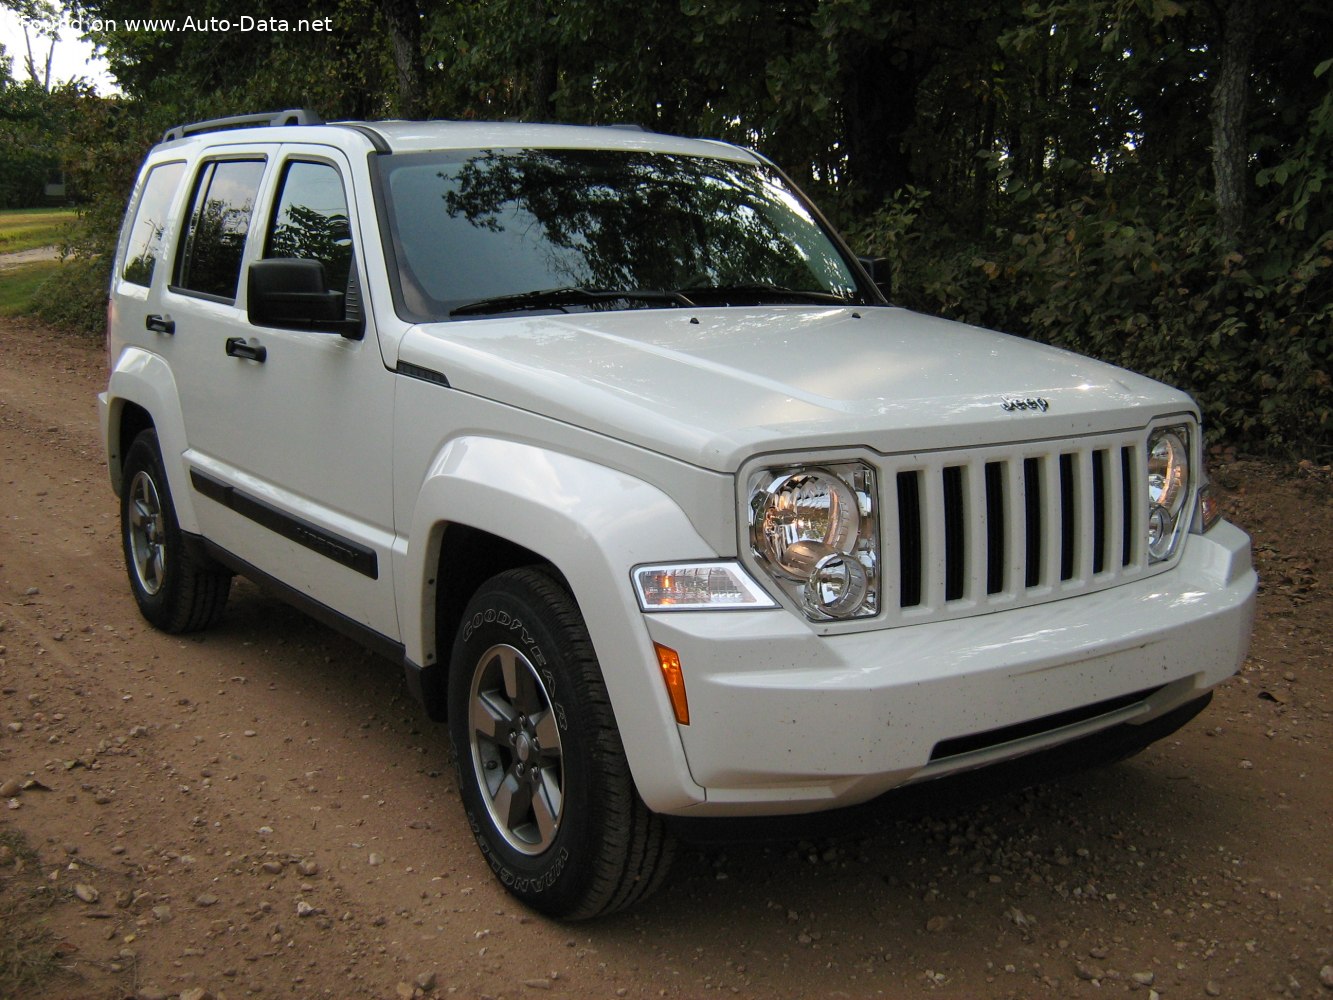 2007 Jeep Liberty Ii 3.7 I V6 12V (213 Hp) Automatic | Technical Specs, Data, Fuel Consumption, Dimensions